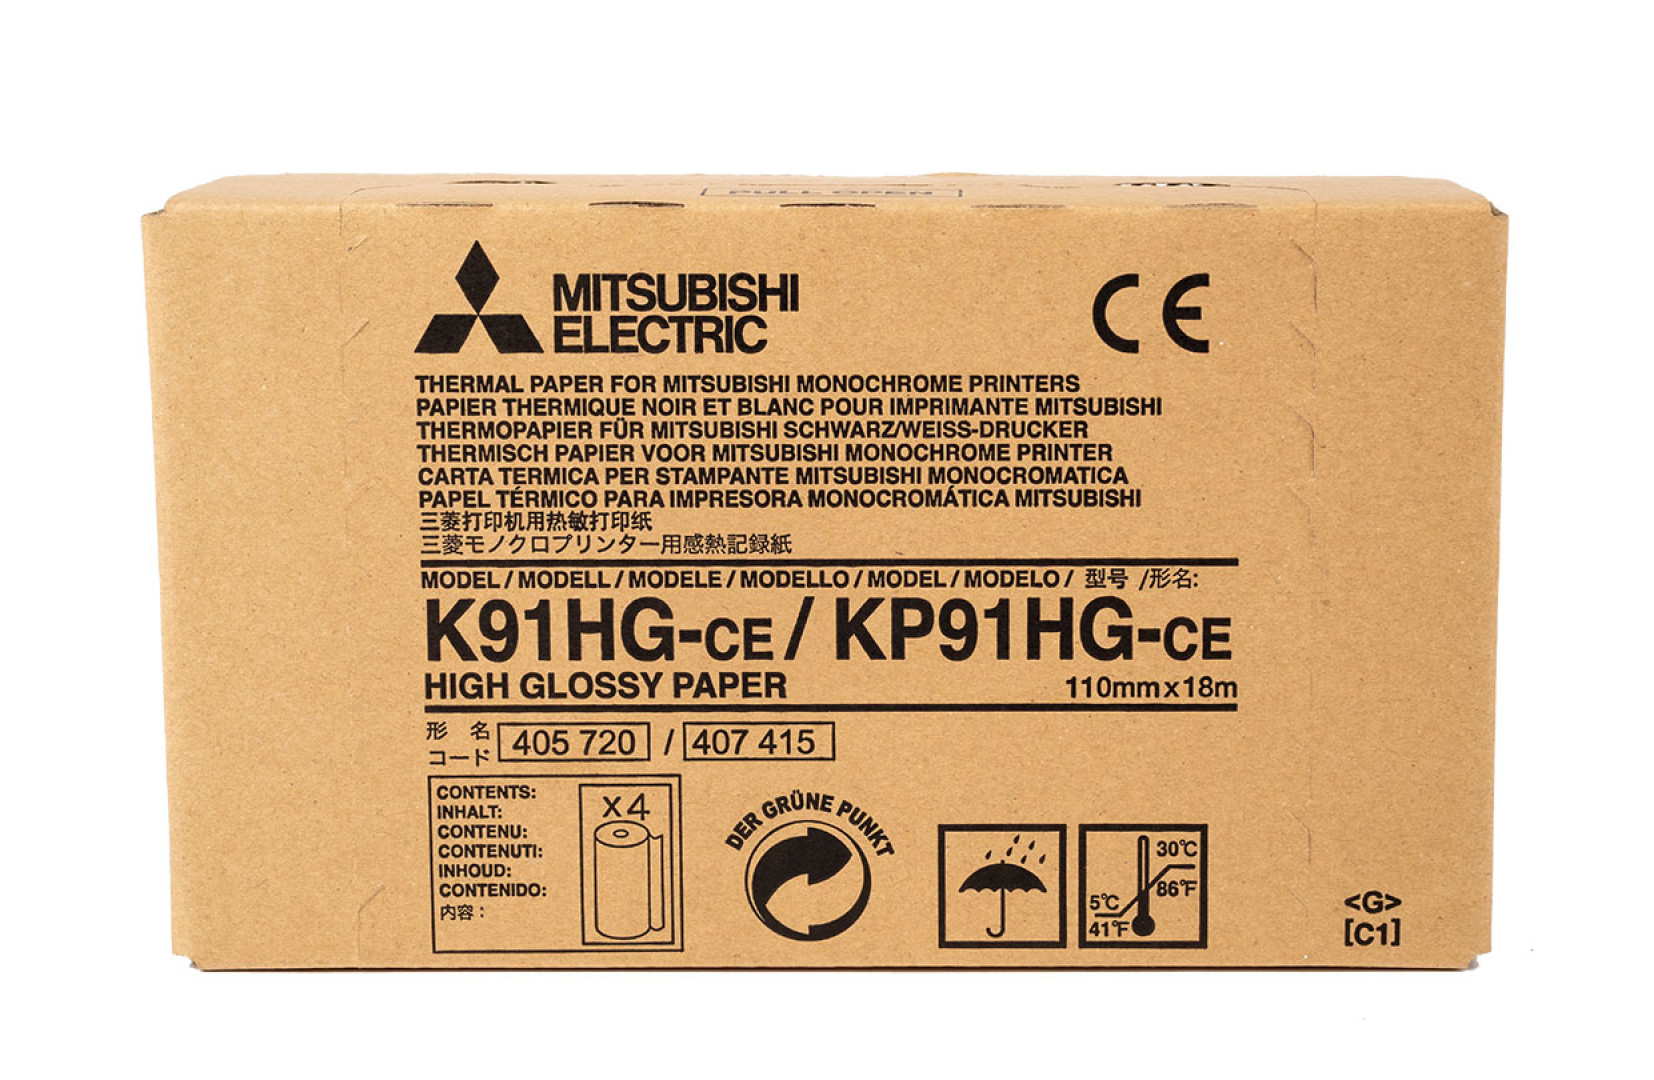 Mitsubishi Electric KP91HG-CE carta termica 20 m